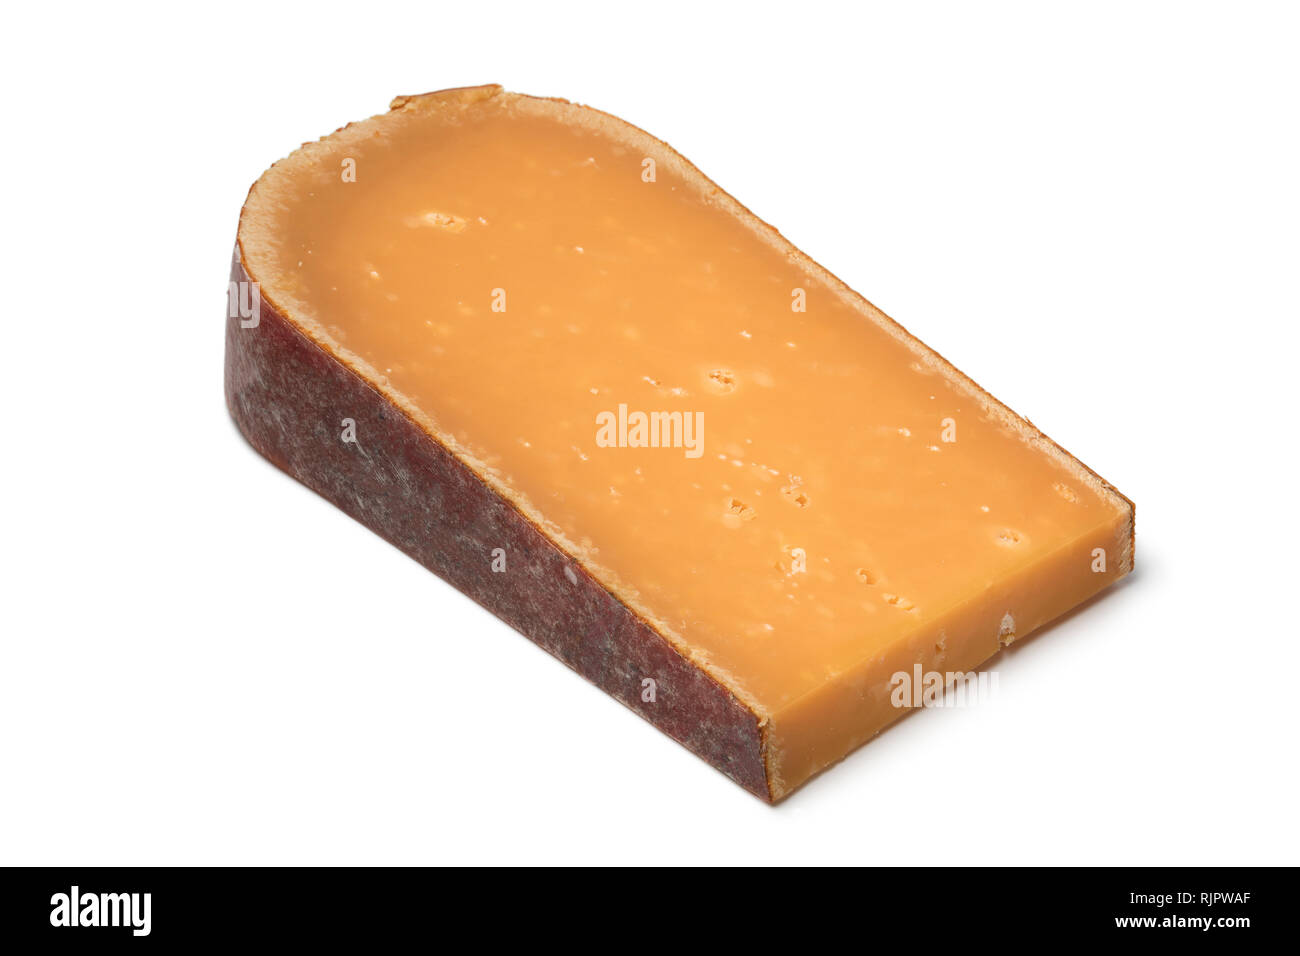 Morceau de fromage Gouda mature néerlandais déballé isolé sur fond blanc Banque D'Images